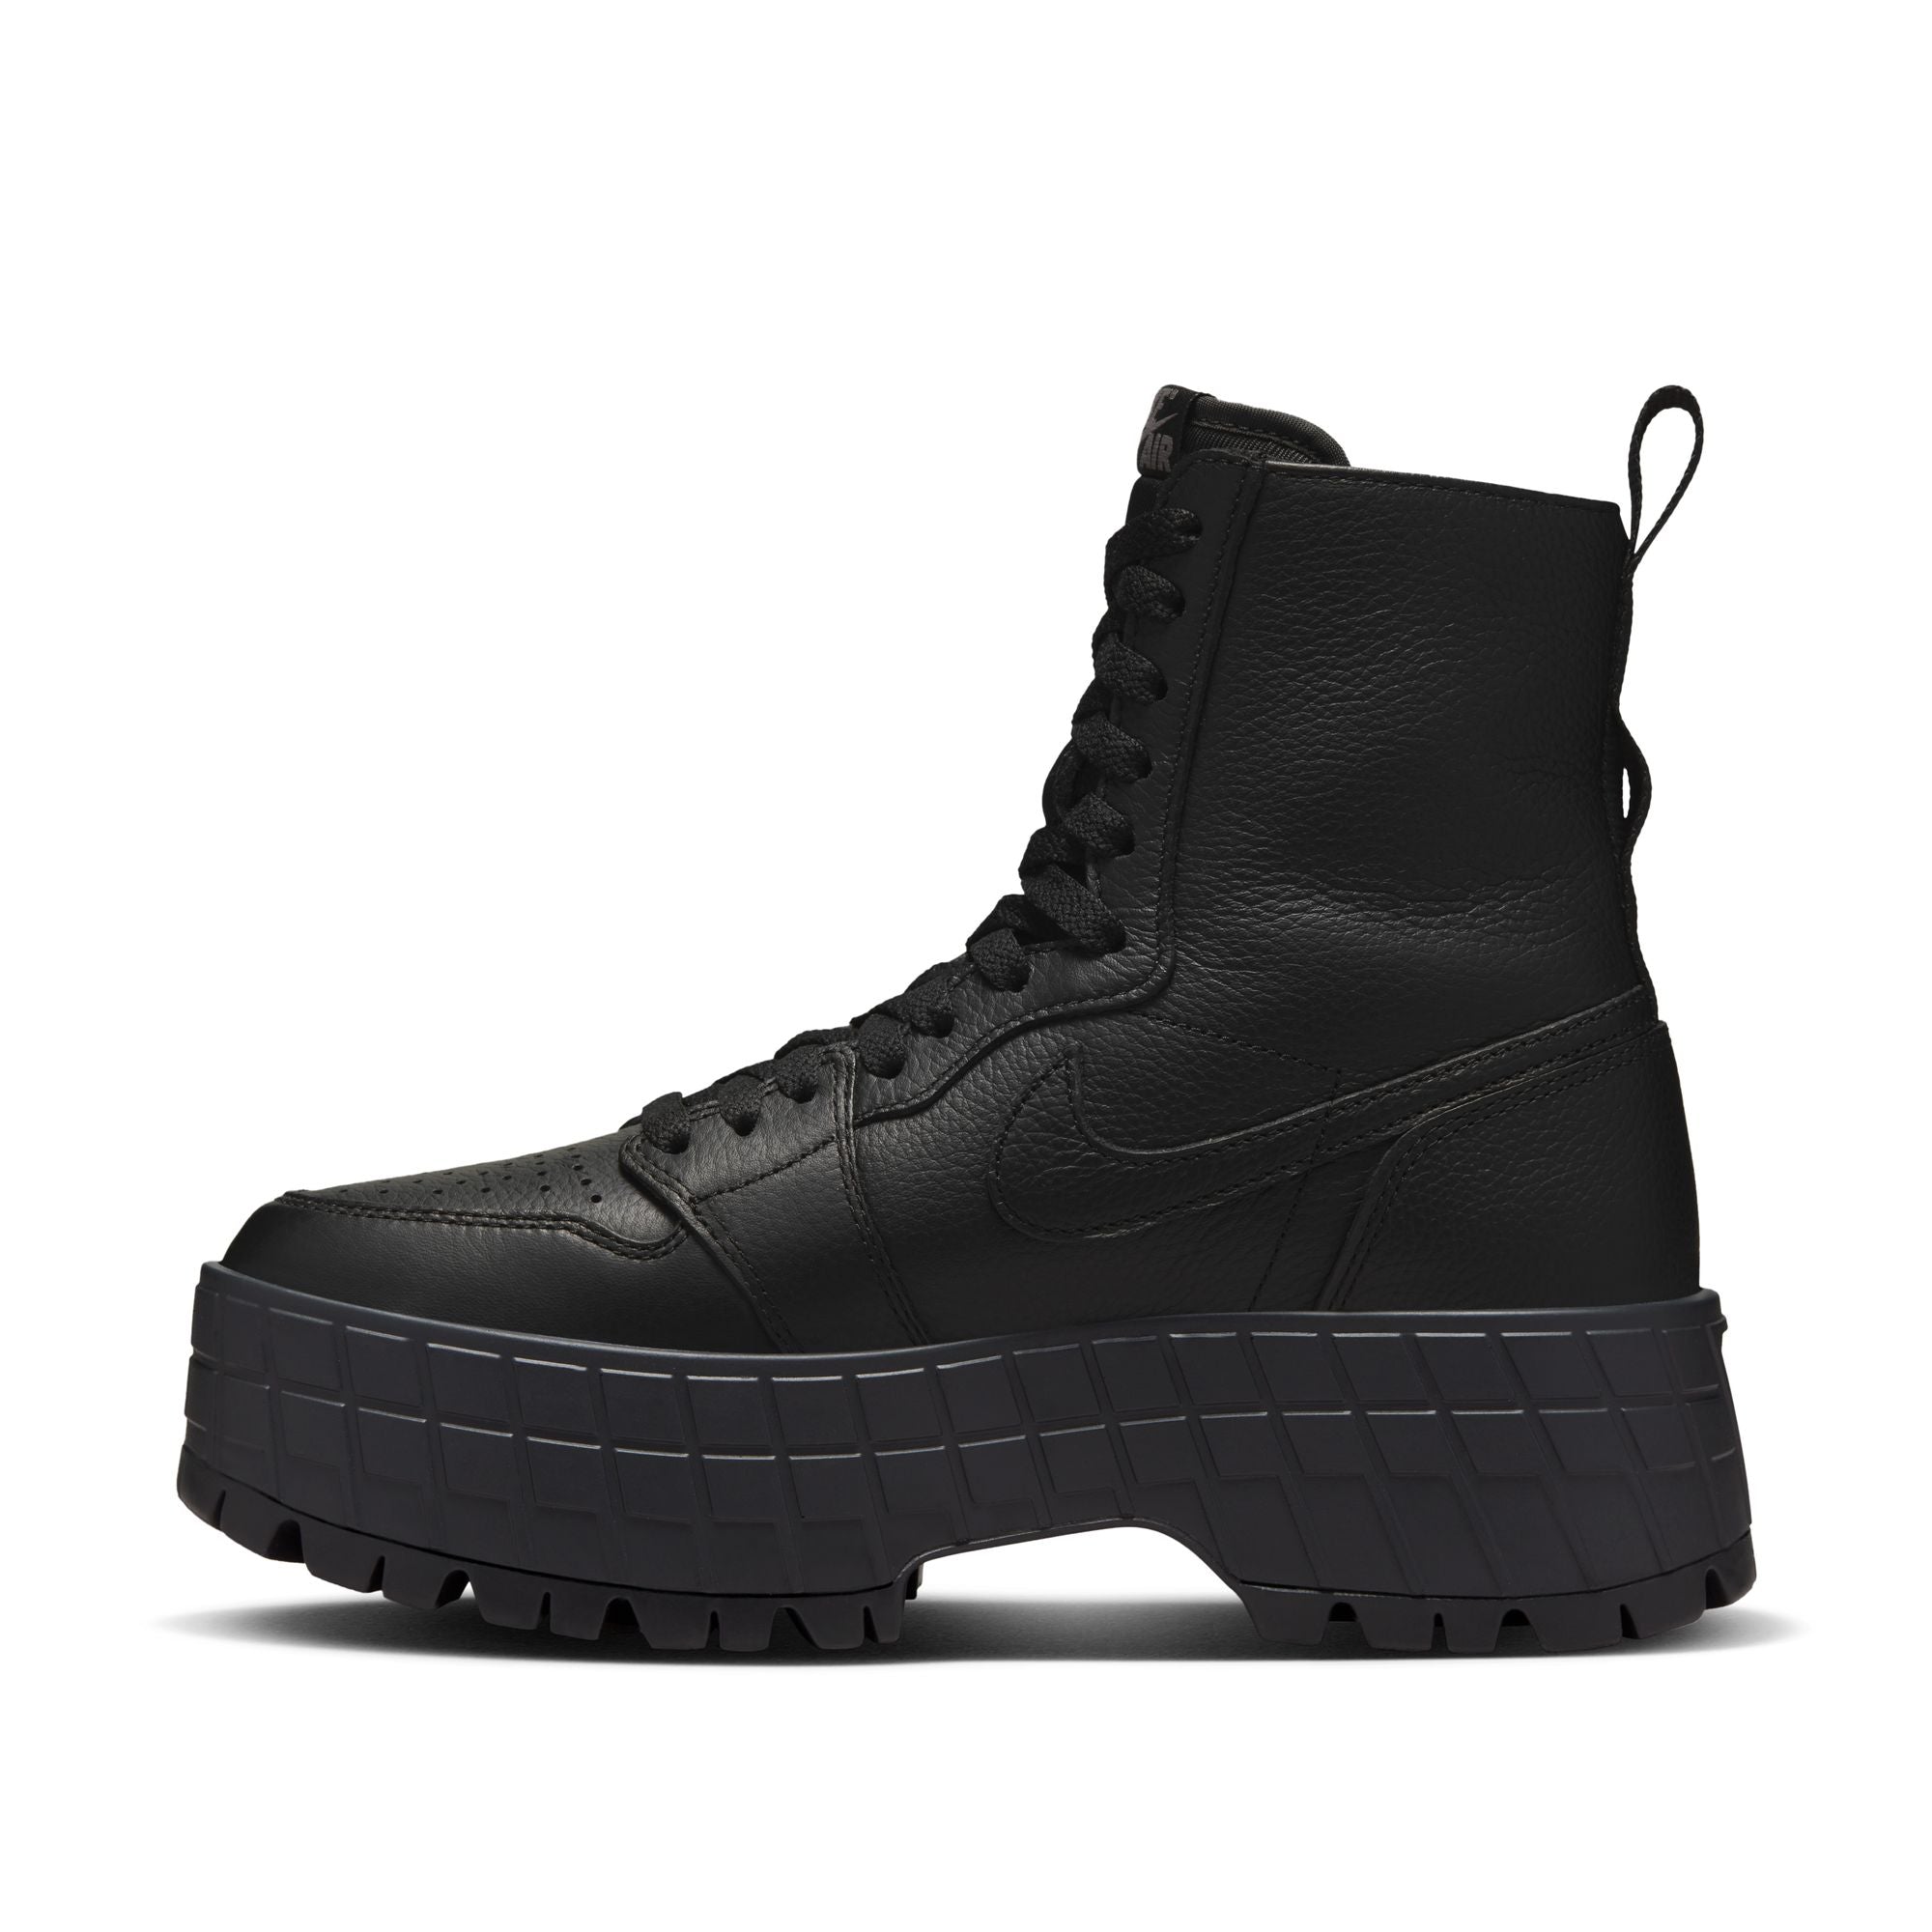 Womens Air Jordan 1 Brooklyn Boots 'Black'